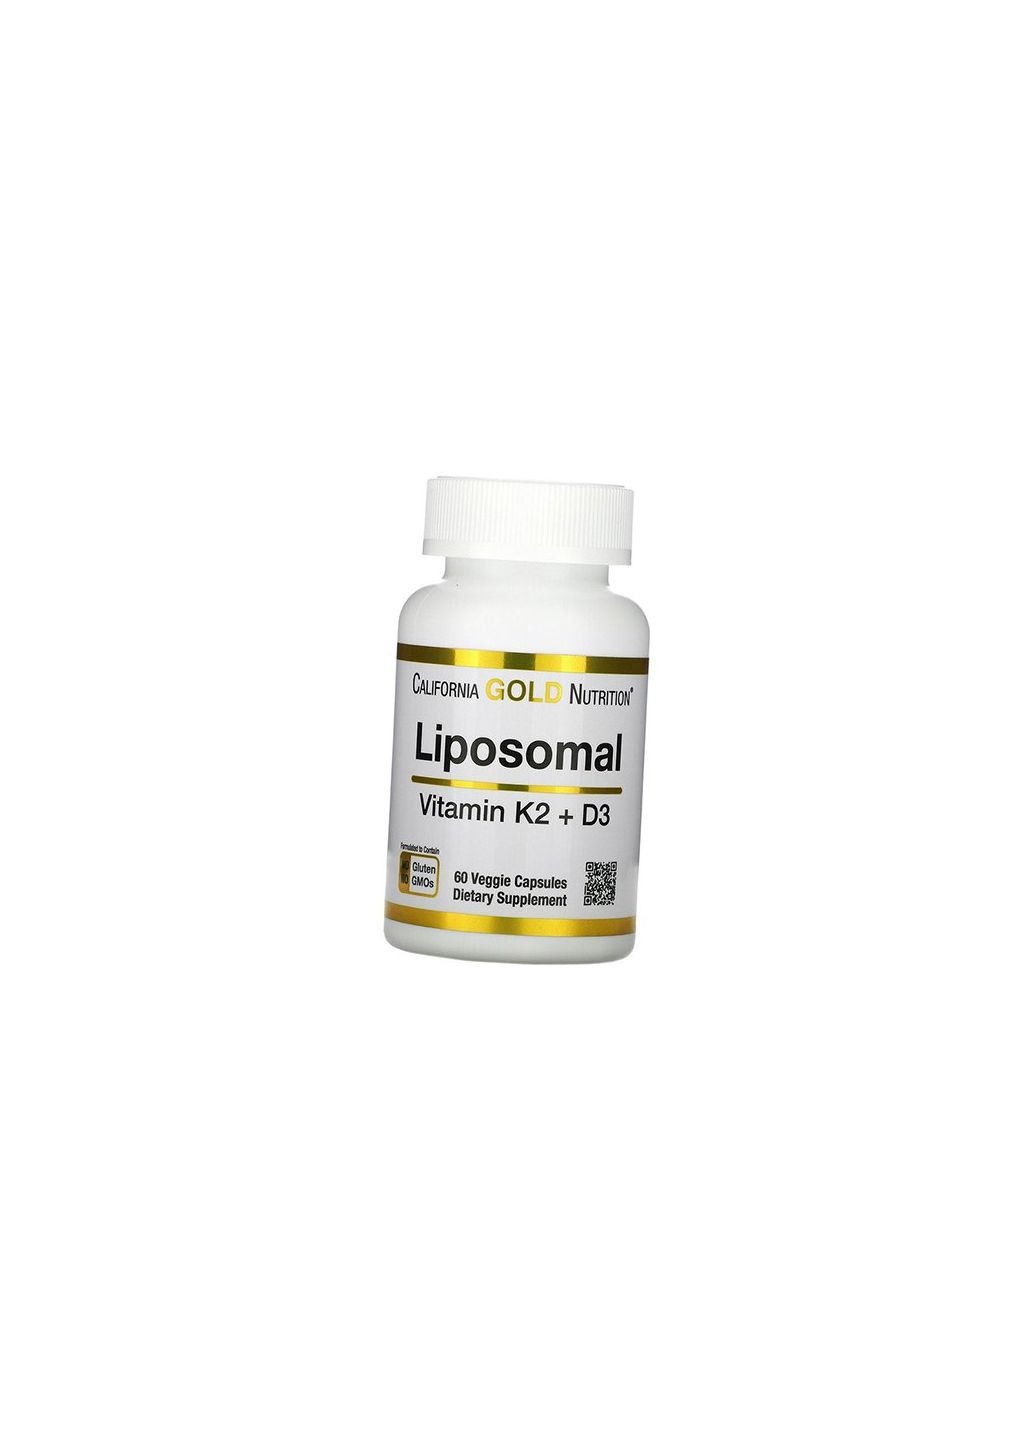 Ліпосомальні Вітаміни К2 та Д3, Liposomal Vitamin K2+ D3, 60вегкапс Цитрус Чорний 36427014, (36427014) California Gold Nutrition (293254609)